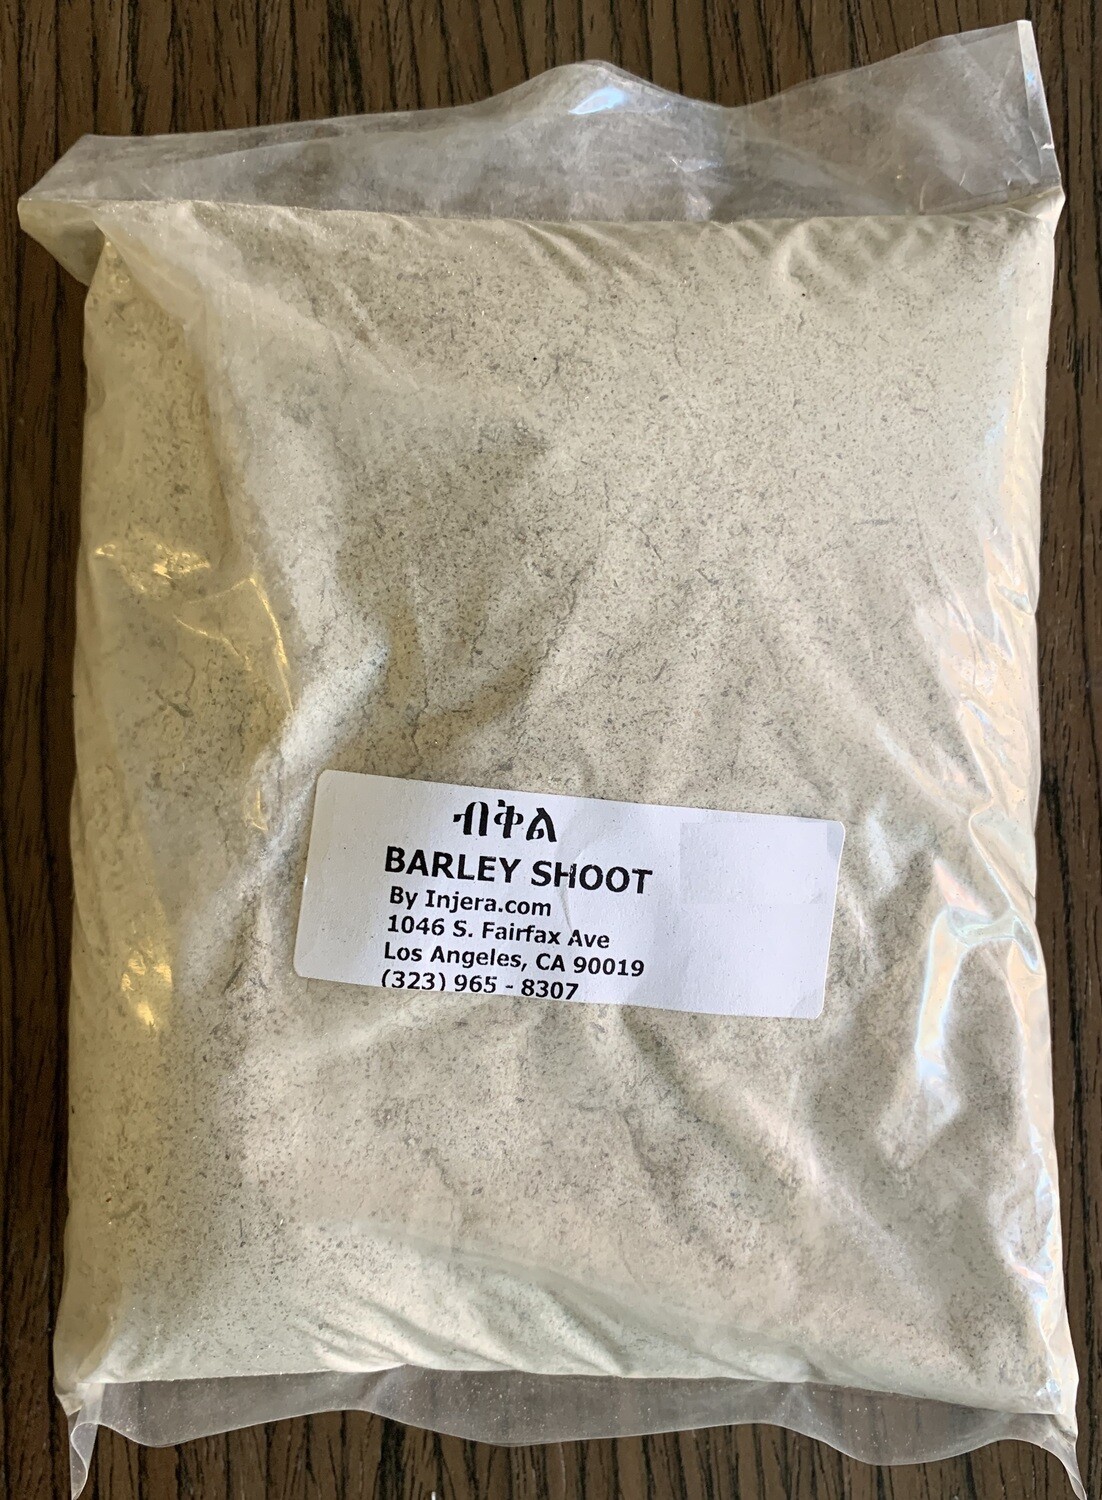 Barley shoot powder የብቅል ዱቄት